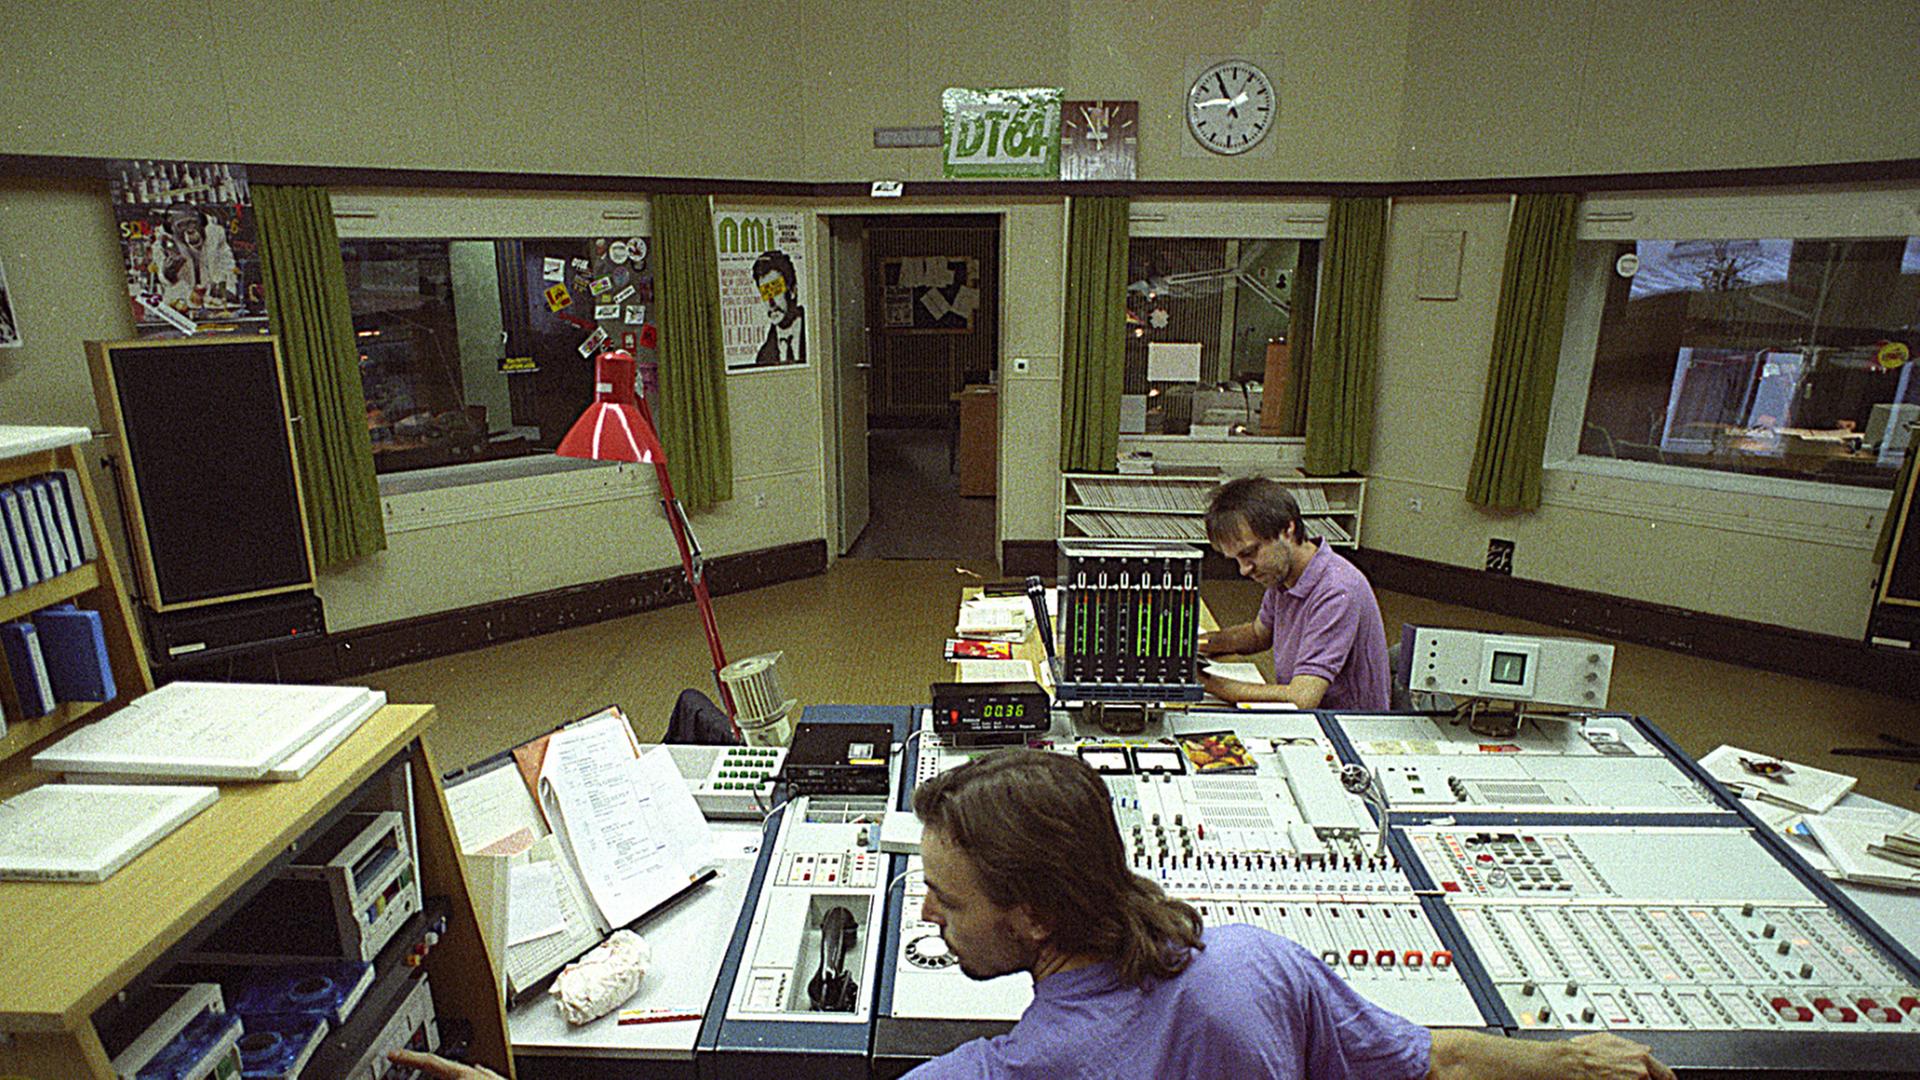 Blick ins Studio Der ostdeutsche Sender Jugendradio DT64, neben Rias 2 beliebtester Jugendsender, war zum Deutschlandtreffen der Jugend 1964 ins Leben gerufen worden. Daher die Bezeichnung DT64.